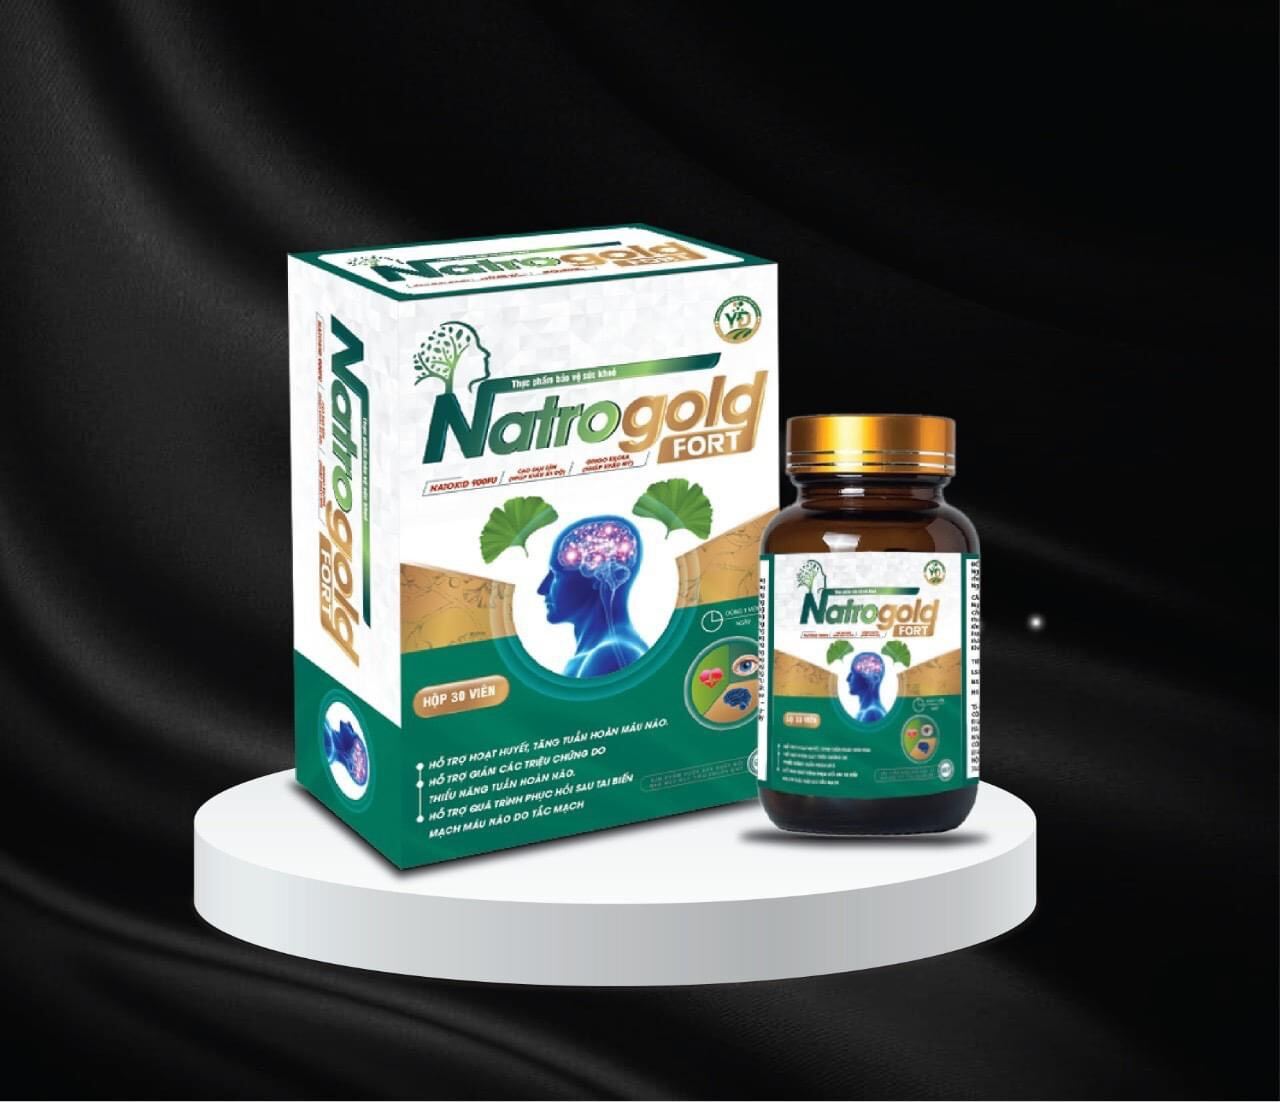 Viên uống bổ não NatroGold Fort 30 viên nguyên liệu Gingko nhập khẩu Mỹ